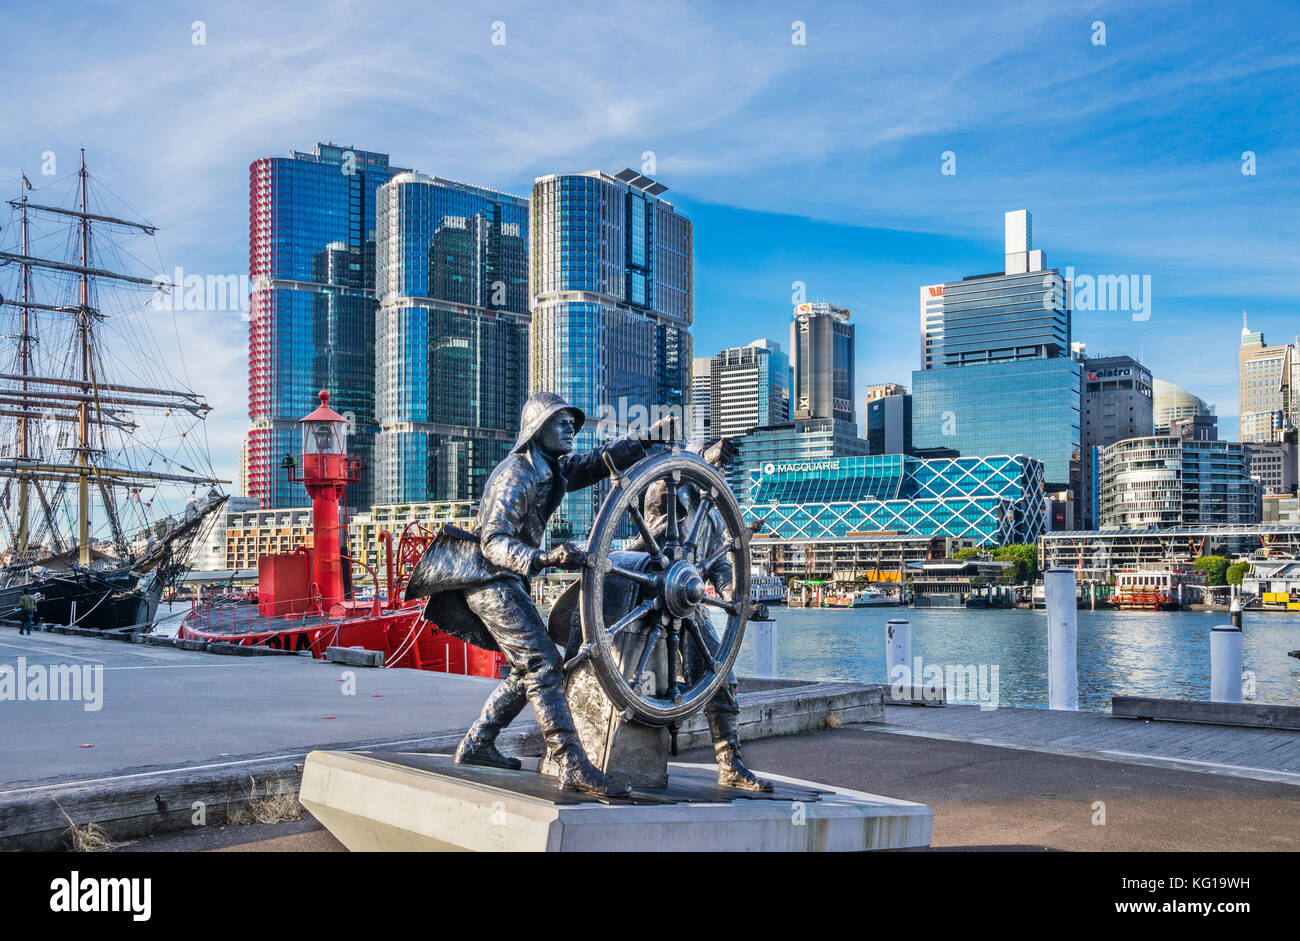 L'Australie, New South Wales, Sydney, Darling Harbour, bronze sculpture pour célébrer les marins windjammer au quai 7 Maritime Heritage Centre Banque D'Images